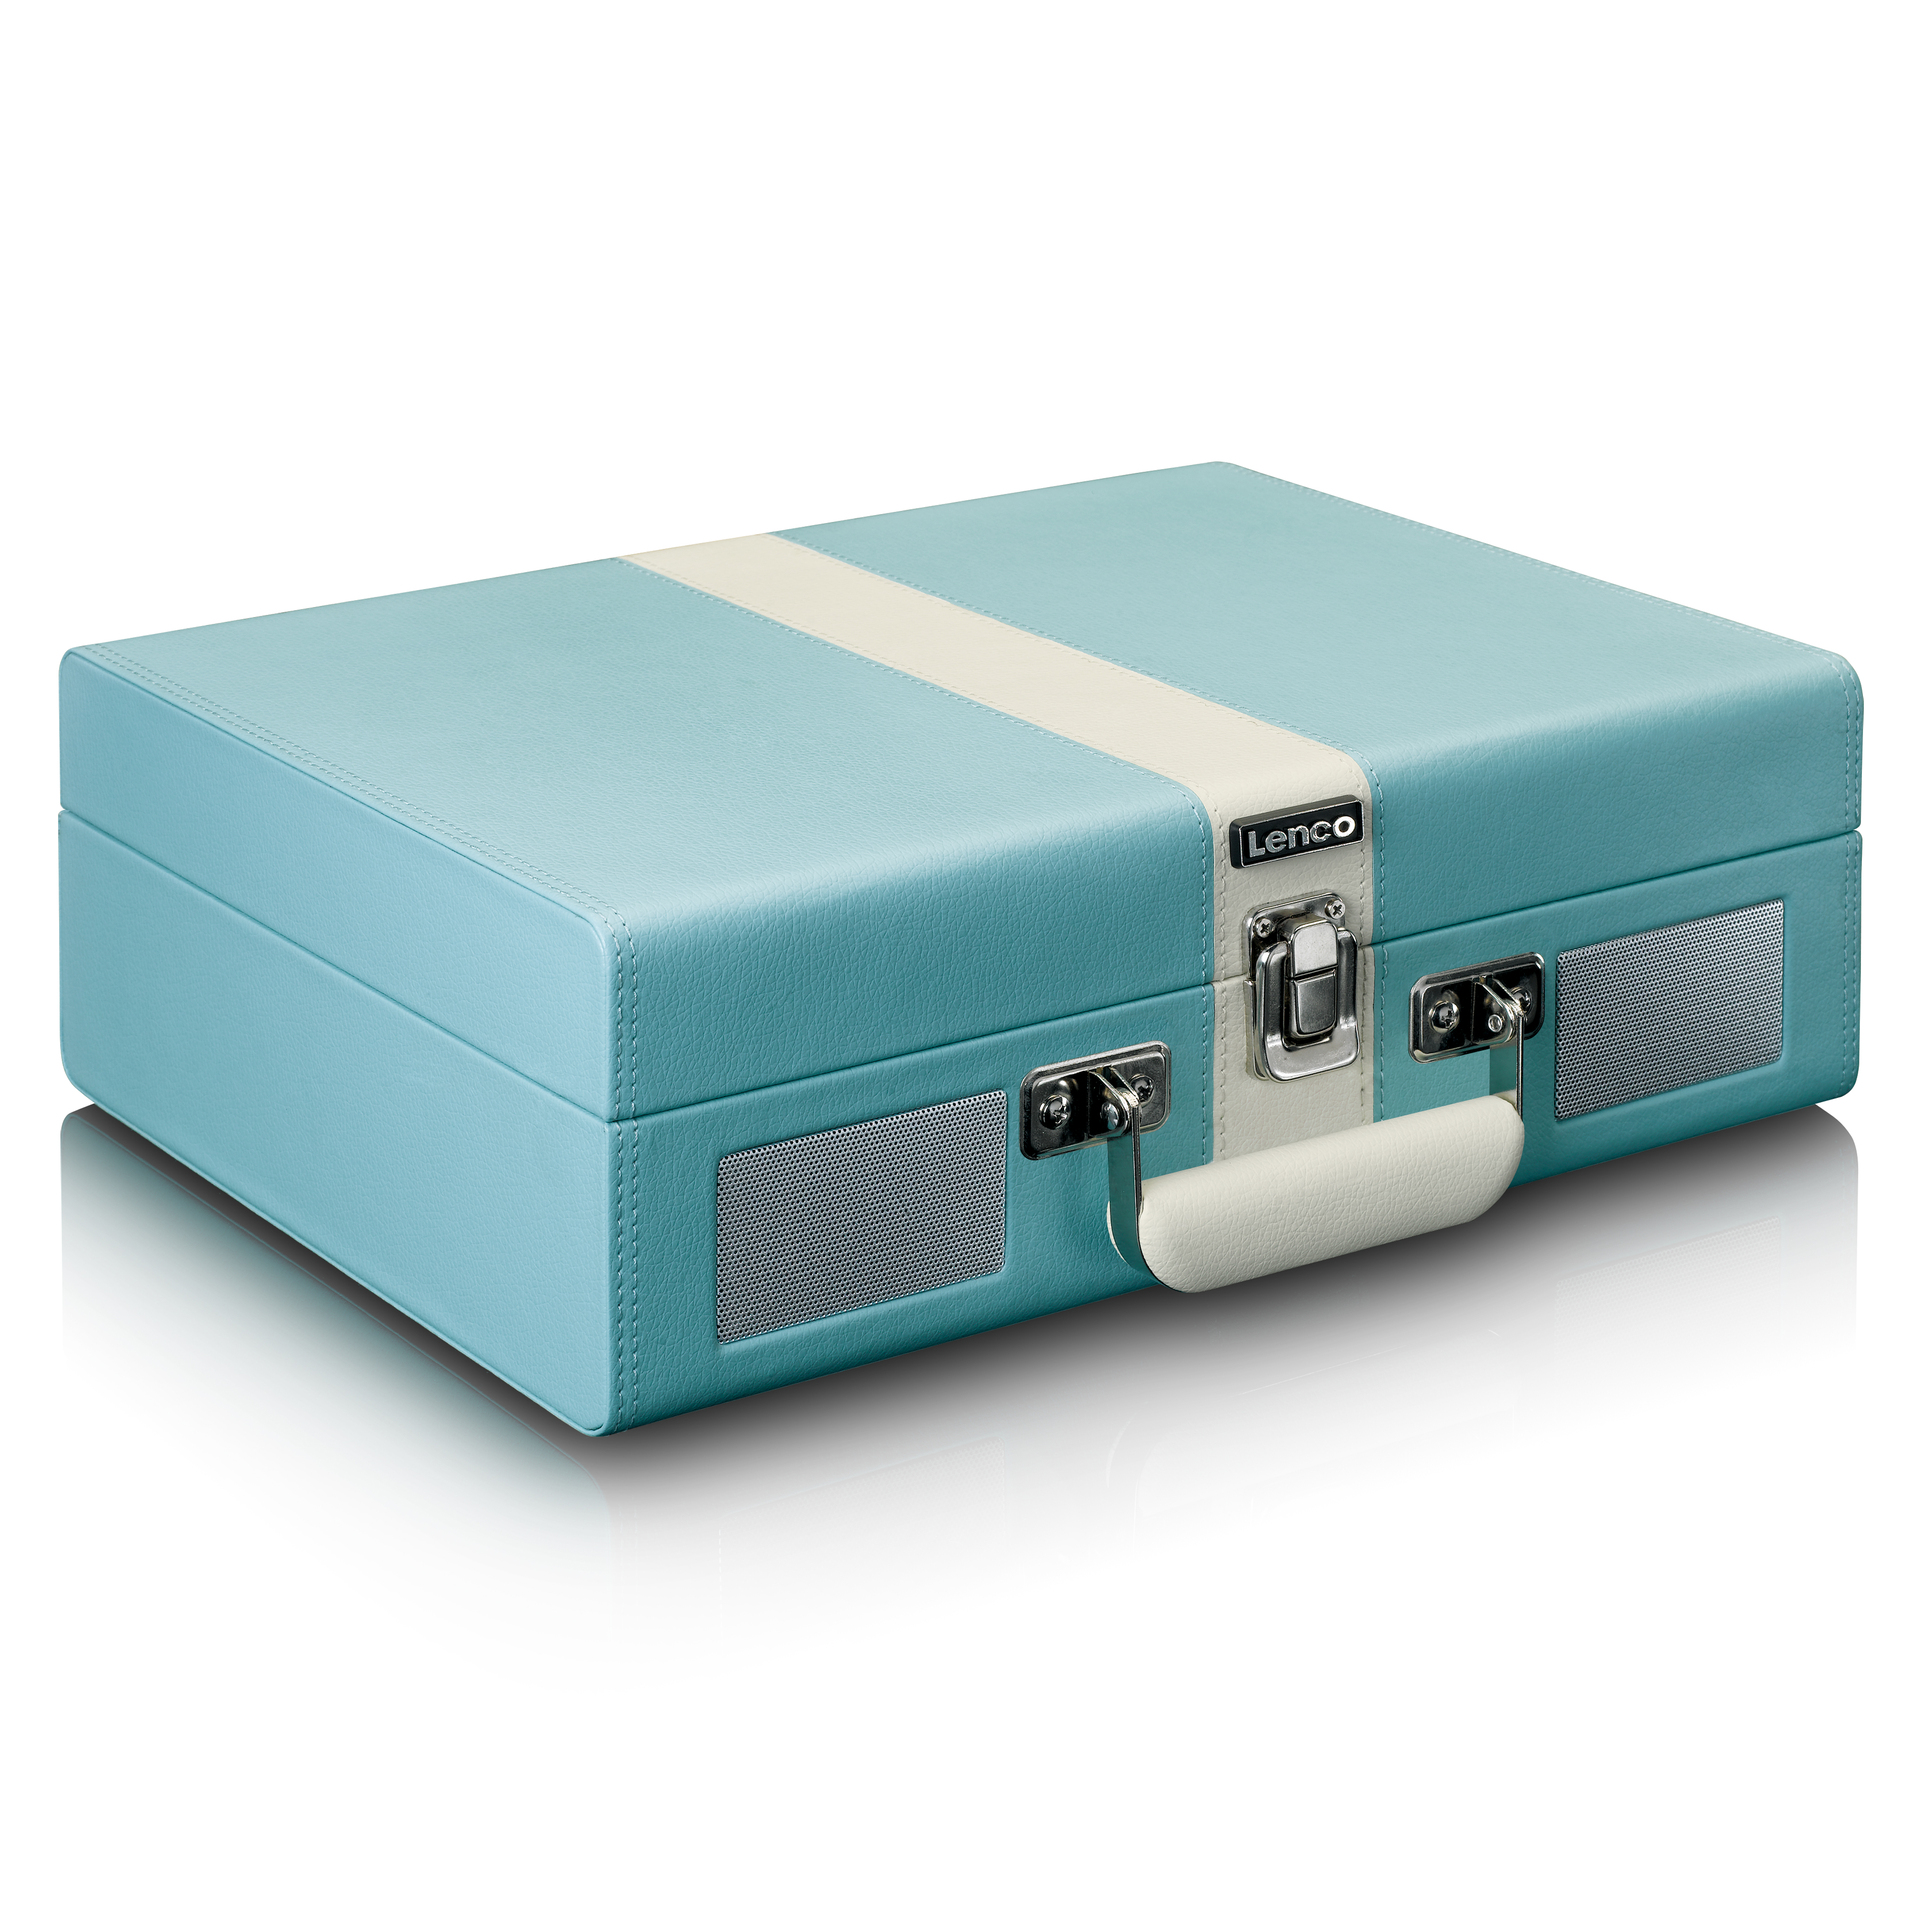 LENCO Koffer-Plattenspieler mit BT Lsp. eingebauten aetka und Shop 